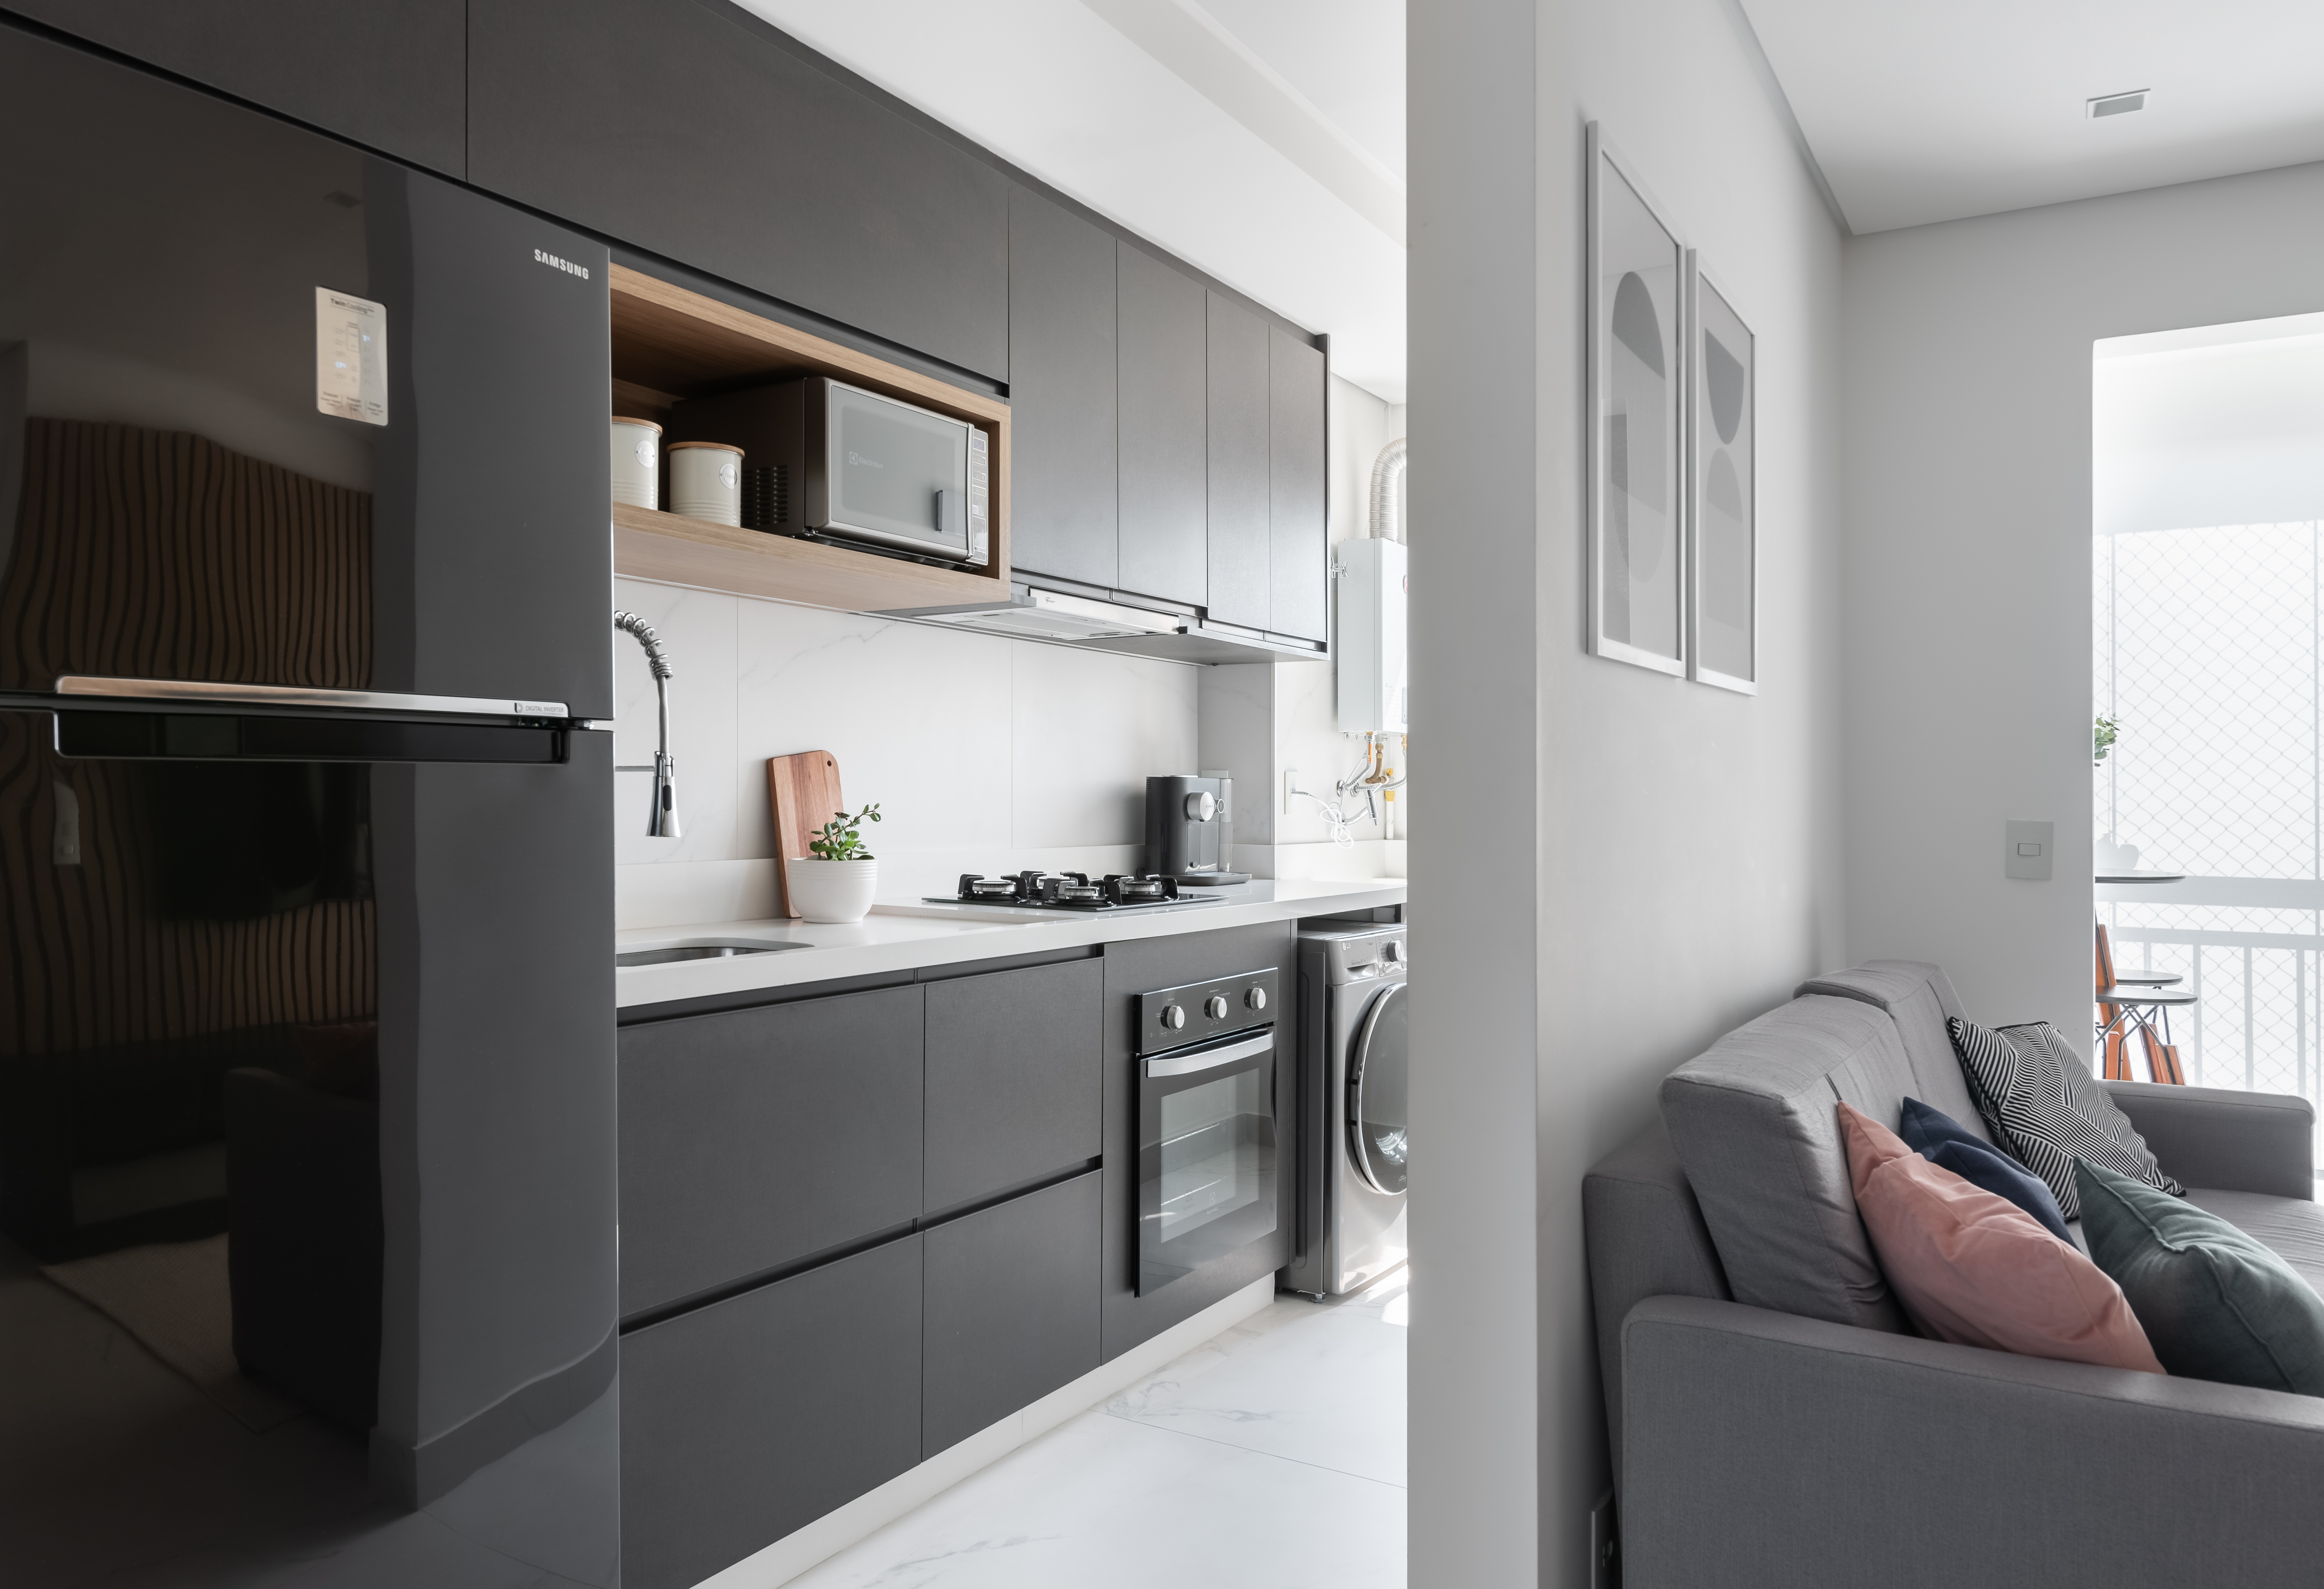  50 m² velik apartma je minimalistično in učinkovito opremljen